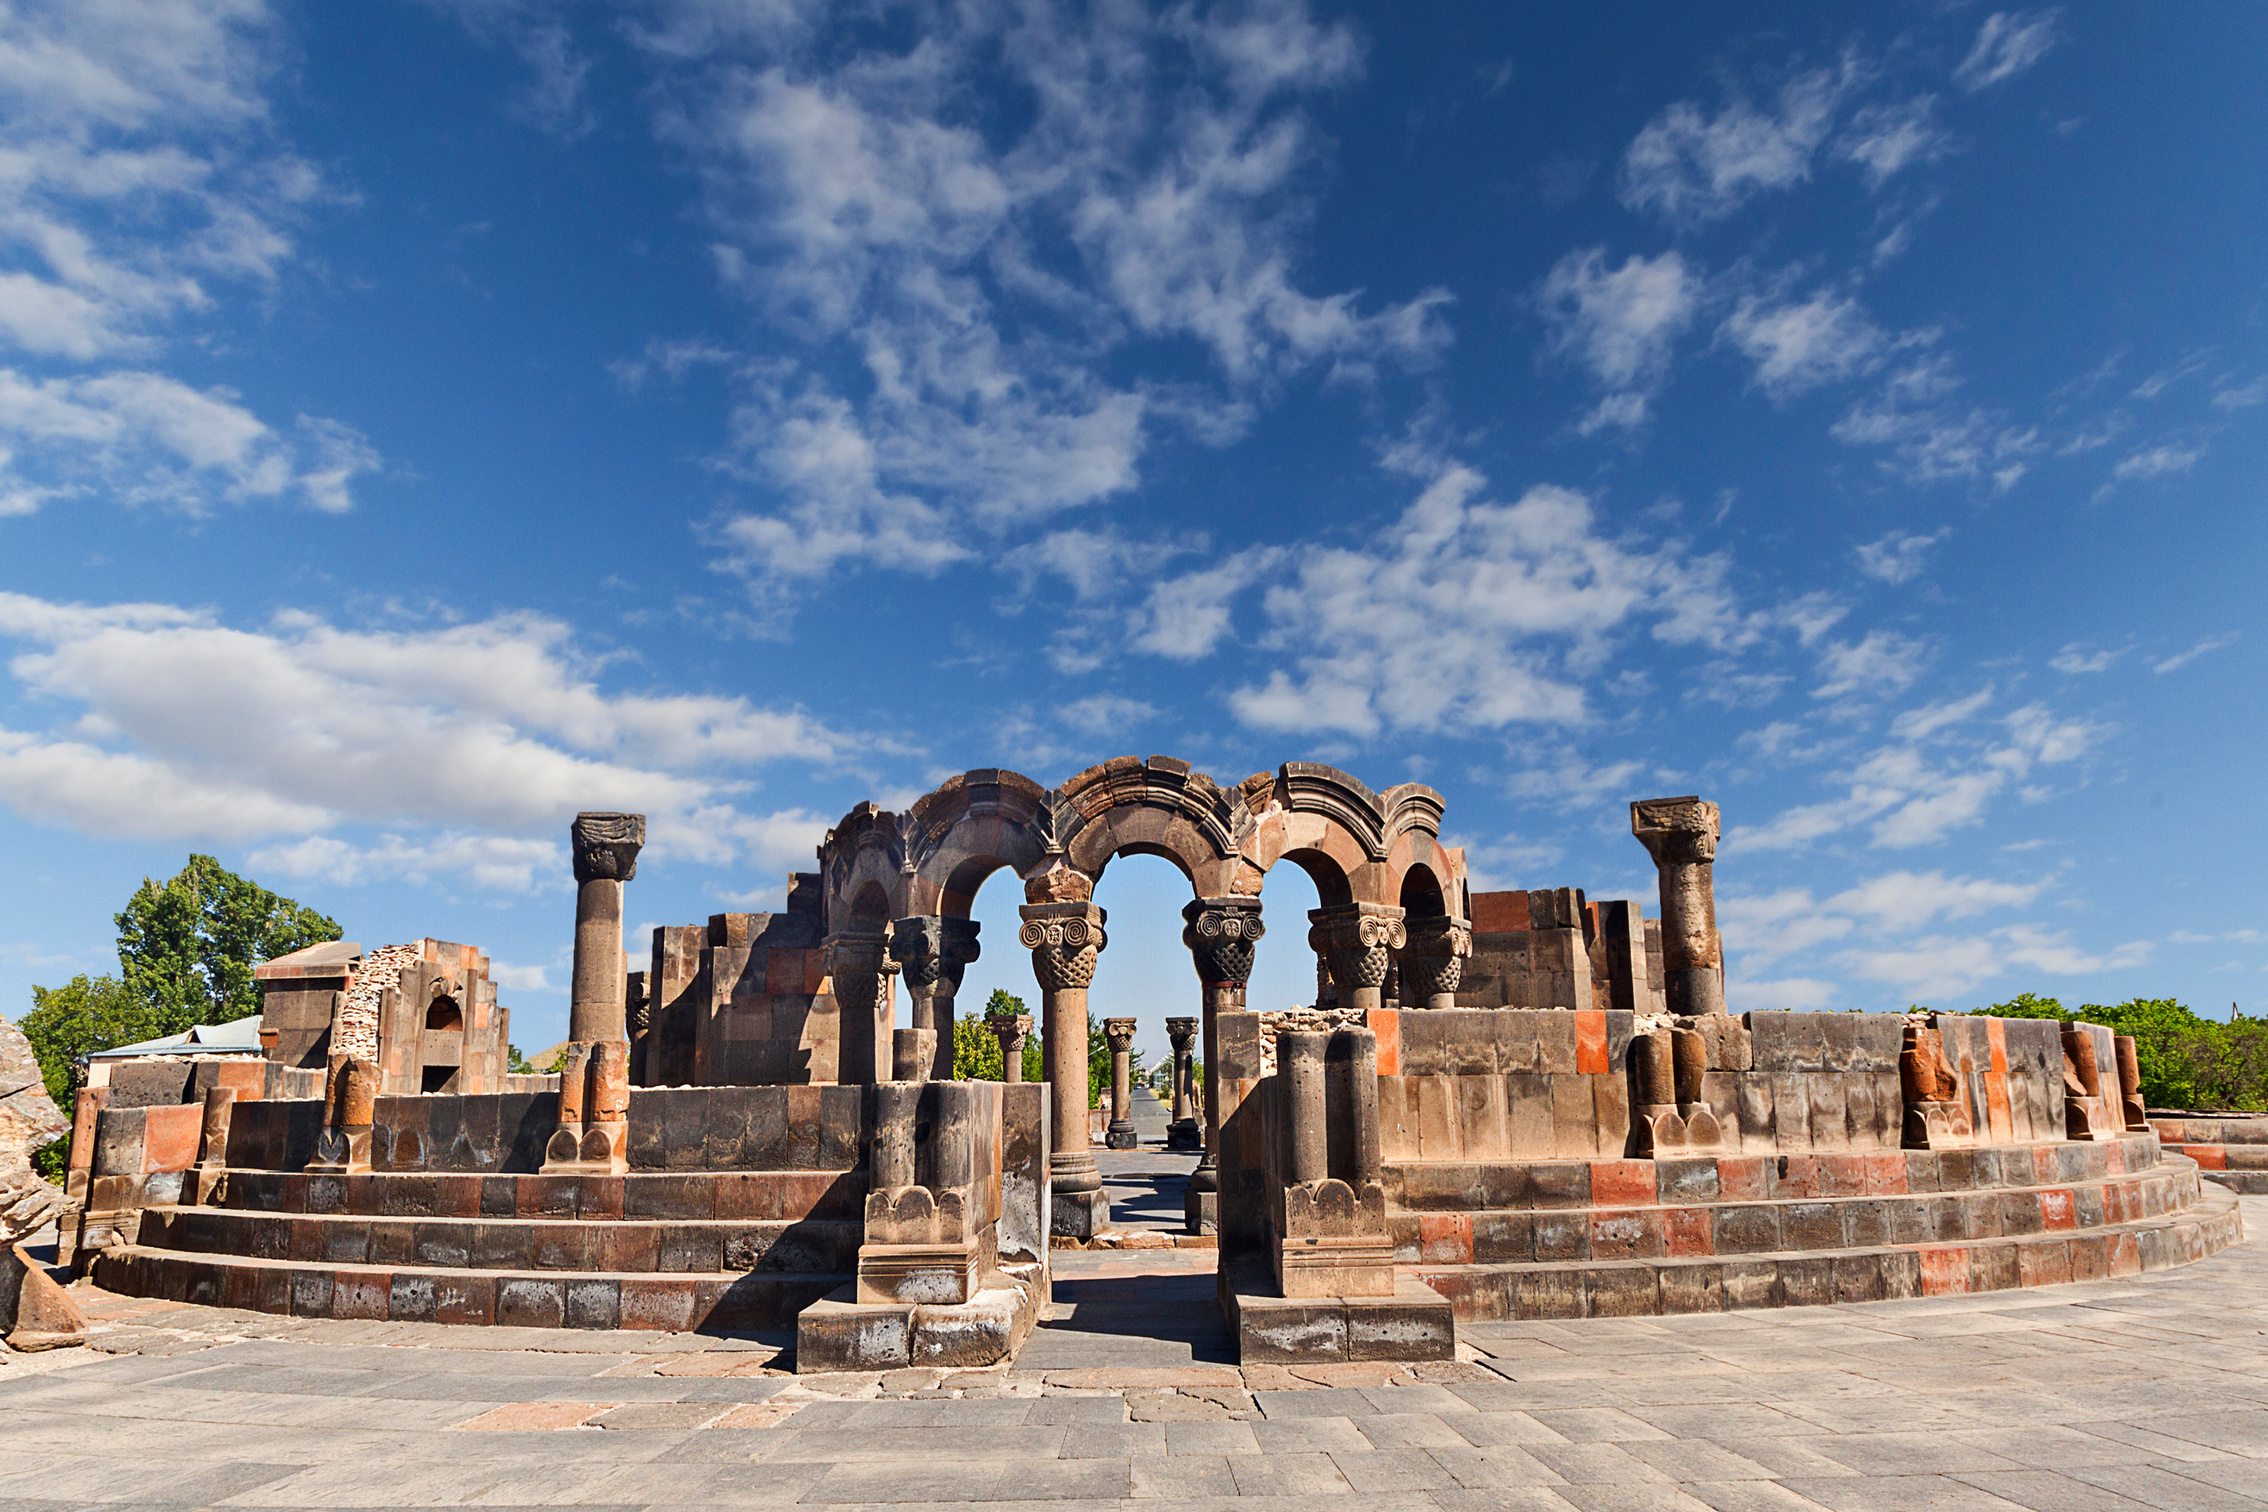 Ruins of Temple of Zvartnots, Yerevan, Armenia.